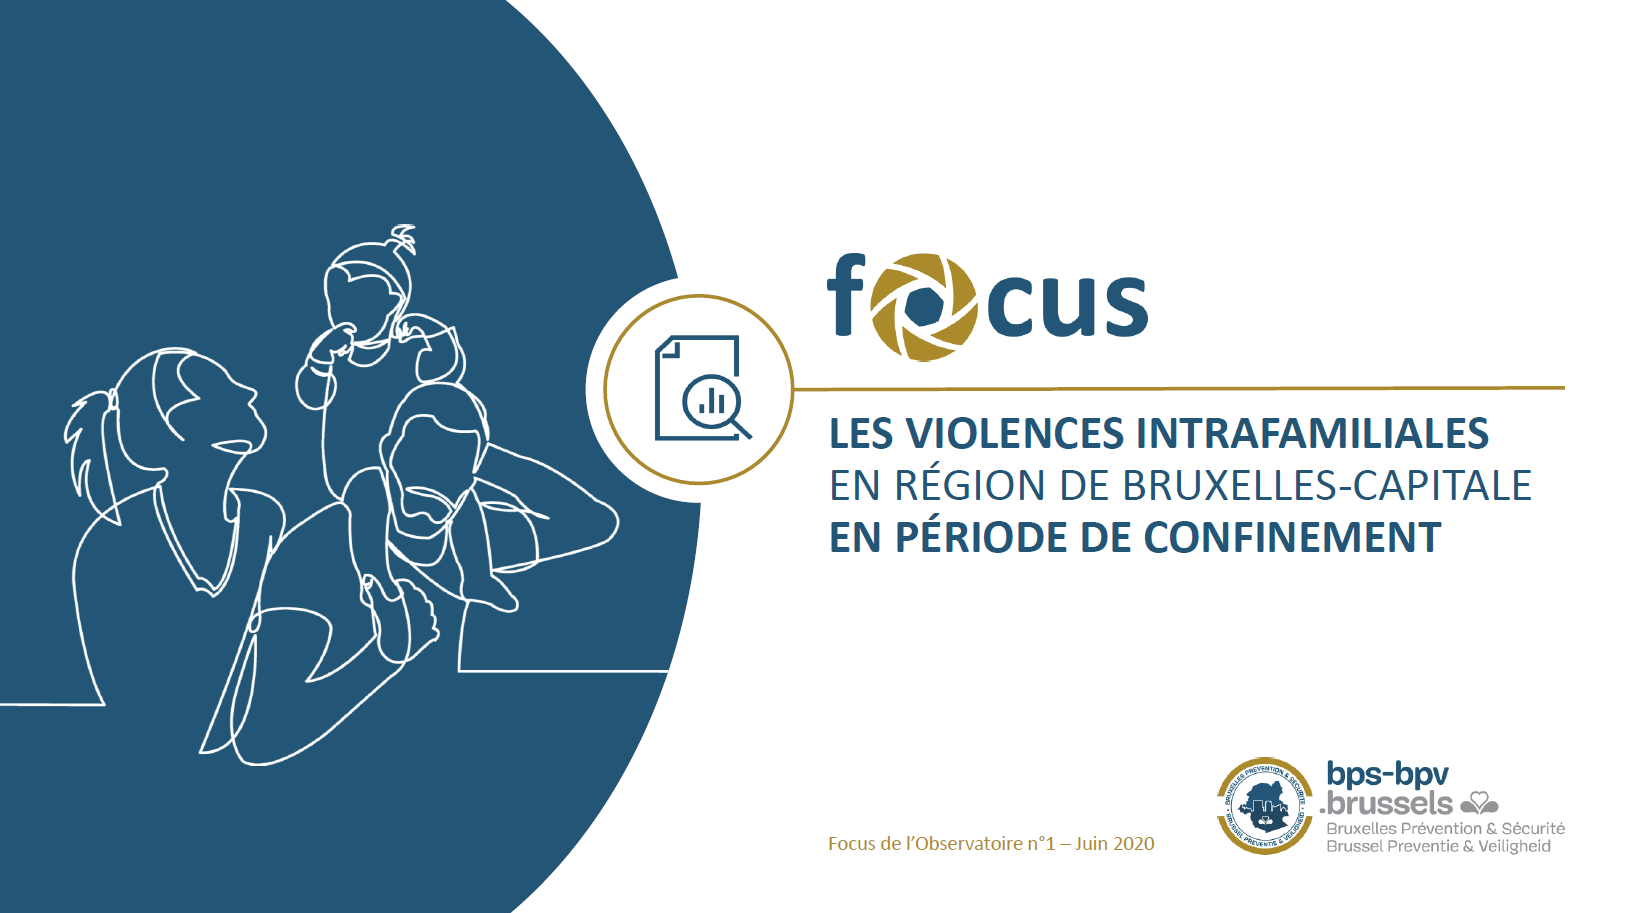 Focus 1 - Les violences intrafamiliales en Région de Bruxelles Capitale en période de confinement